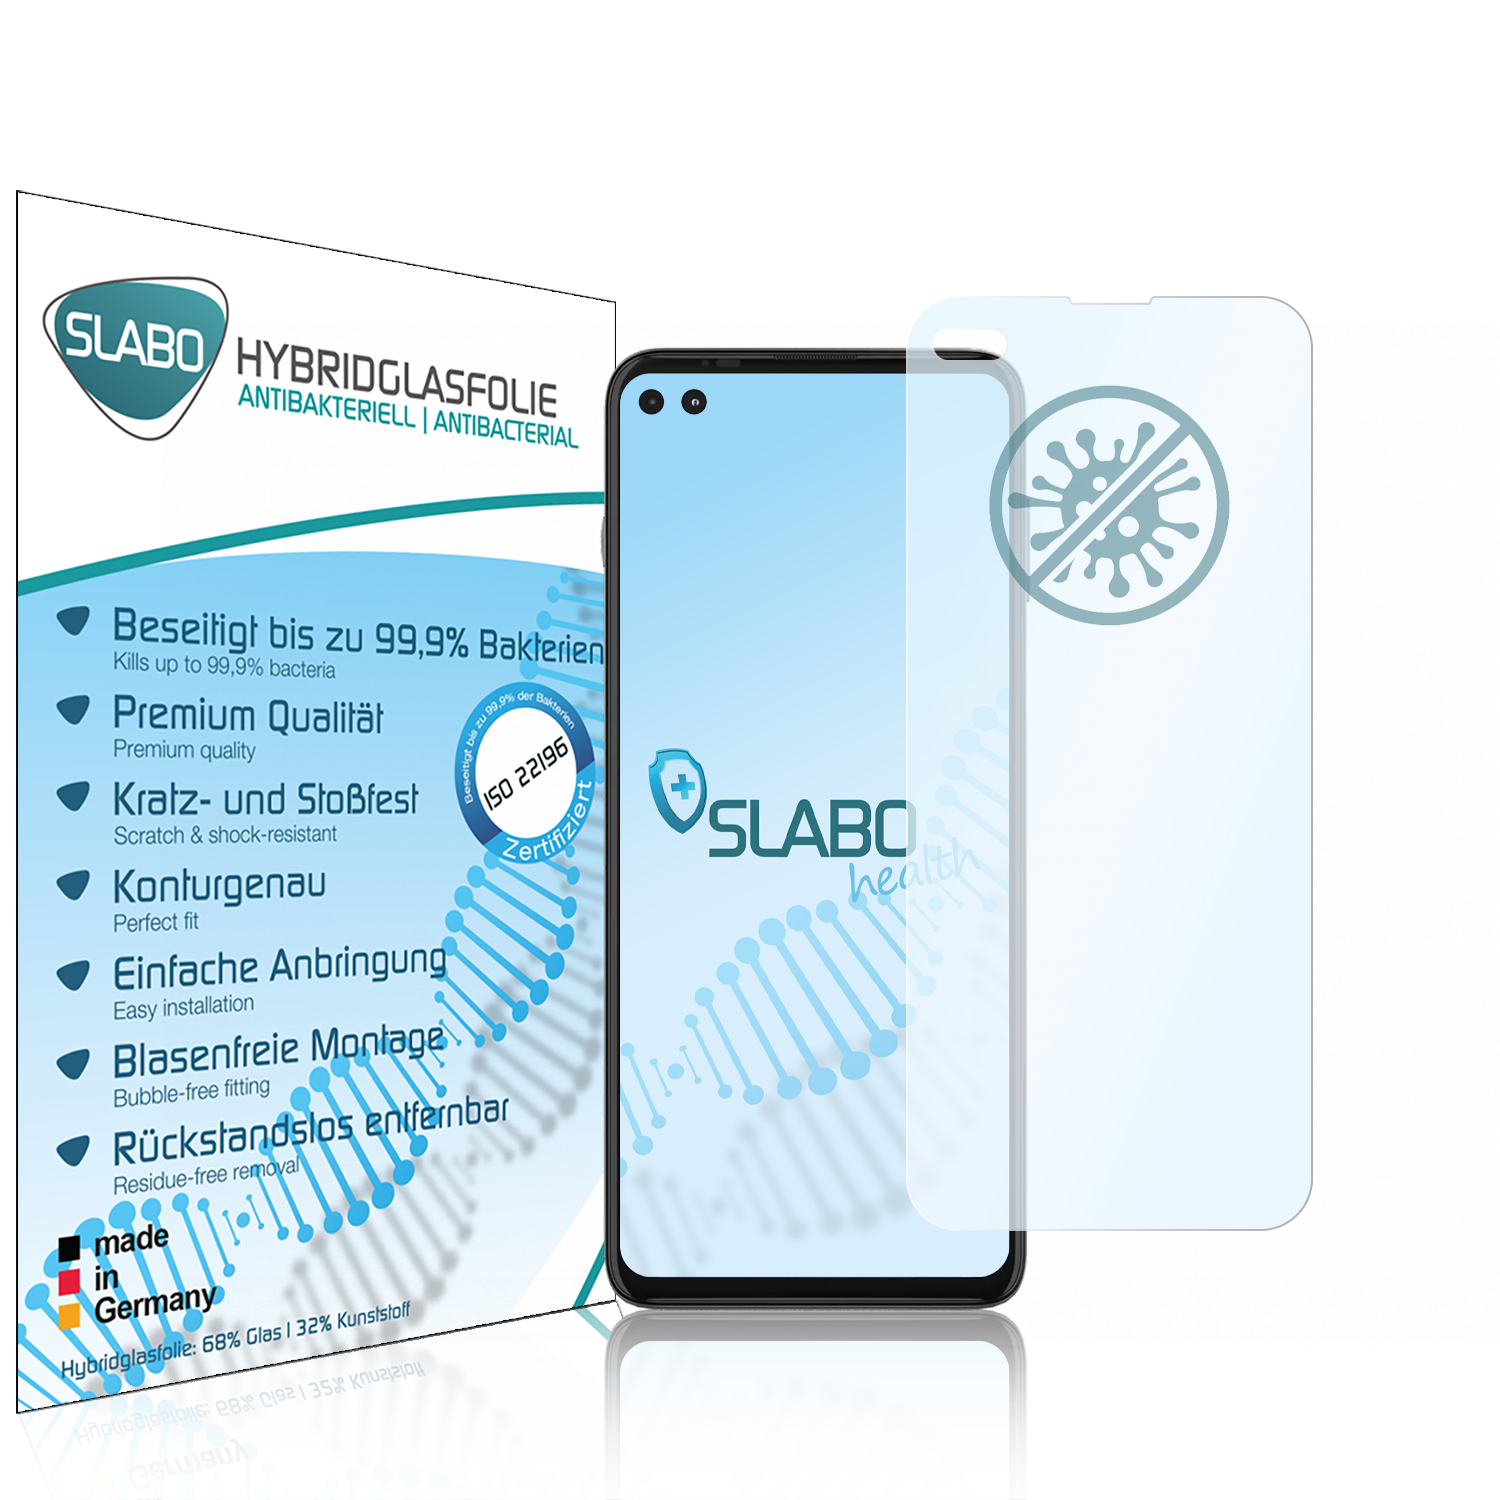 SLABO antibakterielle G100 flexible (5G)) Displayschutz(für Moto Motorola Hybridglasfolie